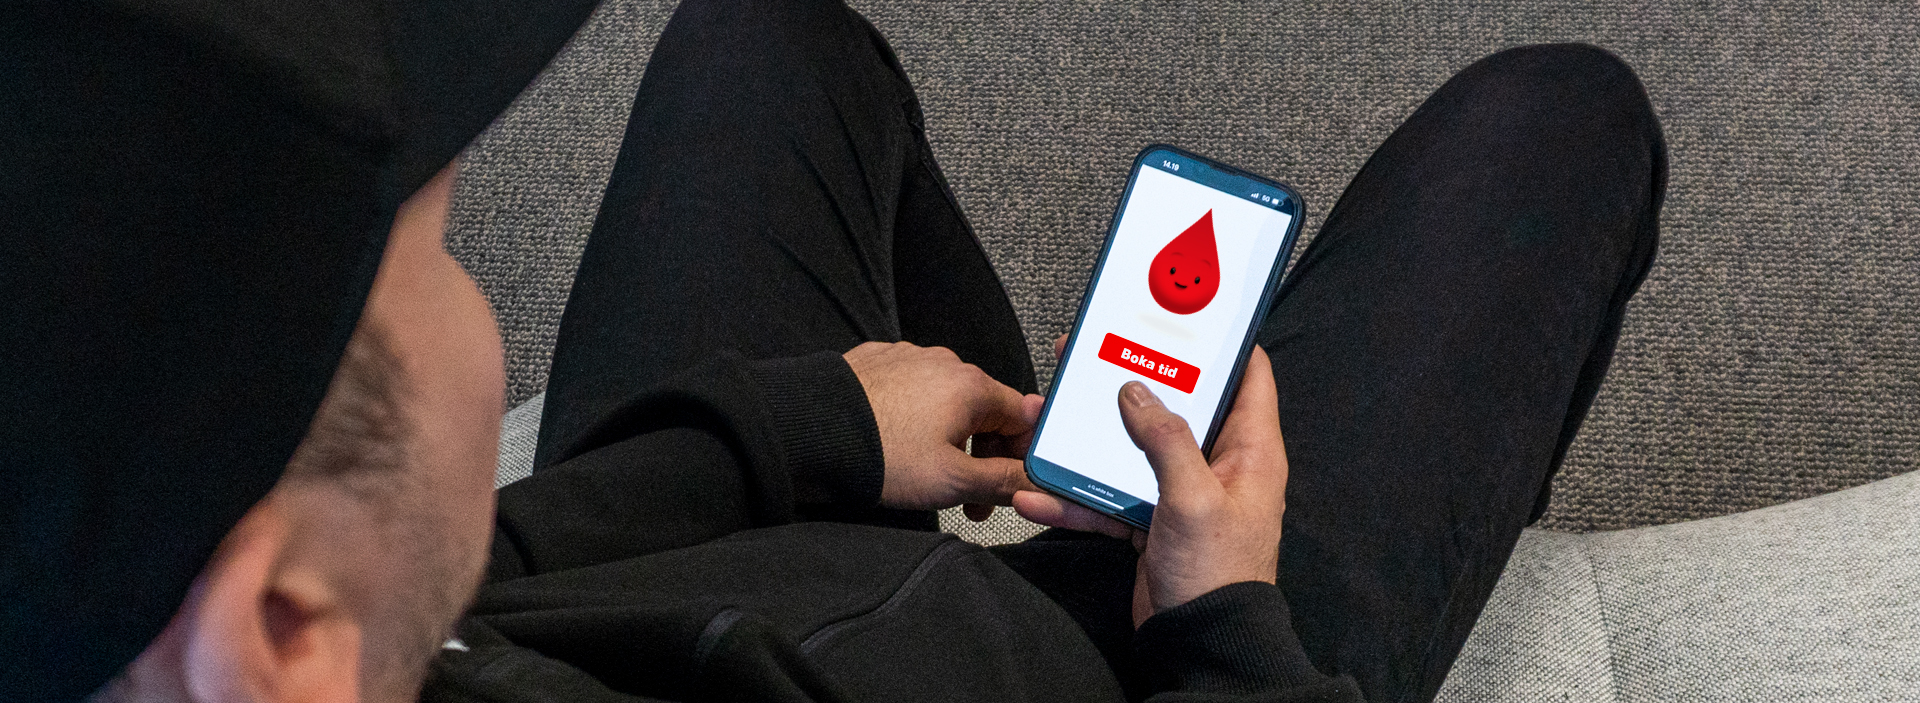 En man som bokar tid för att donera blod på en mobiltelefon.